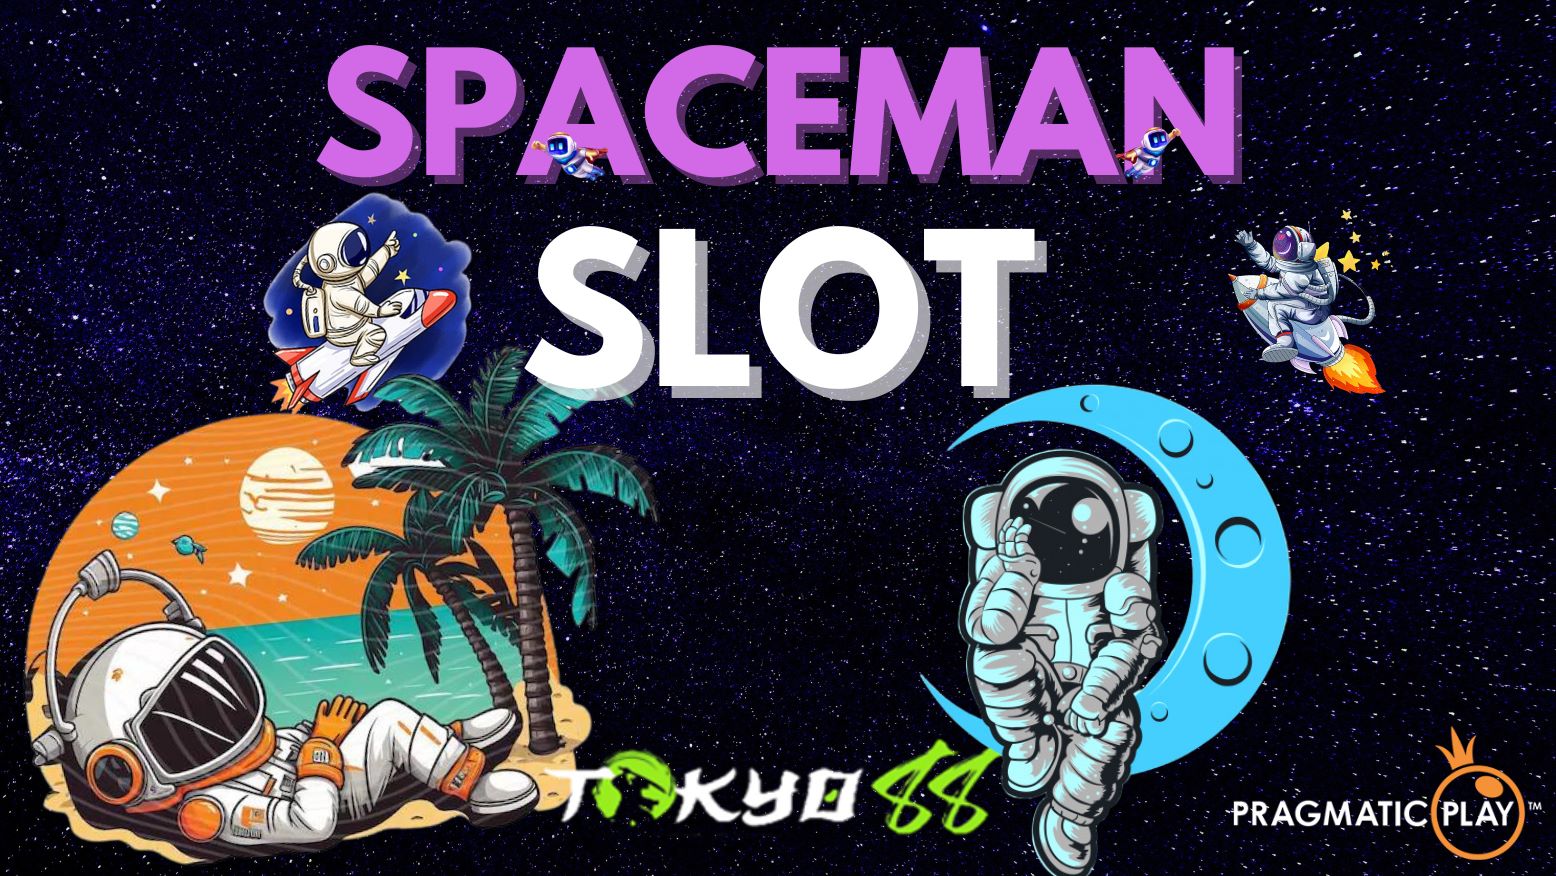 Cosmic Thrills Await: Spaceman, Pulsa Deposit, Tangkasnet Unleashed